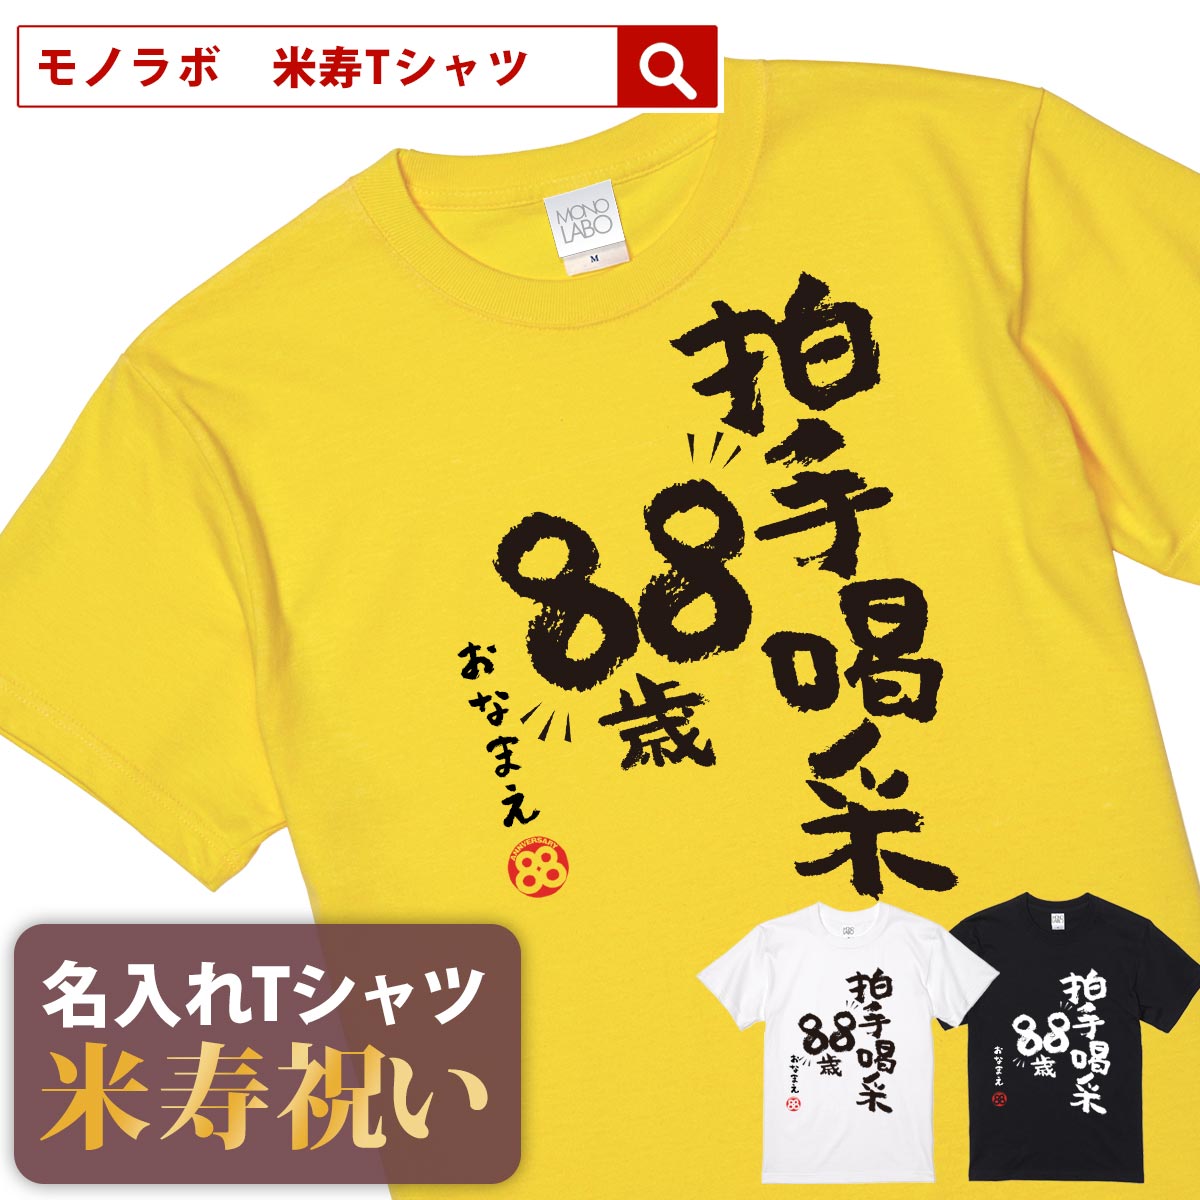 米寿祝い tシャツ 米寿 おもしろ 名入れ 黄色...の商品画像